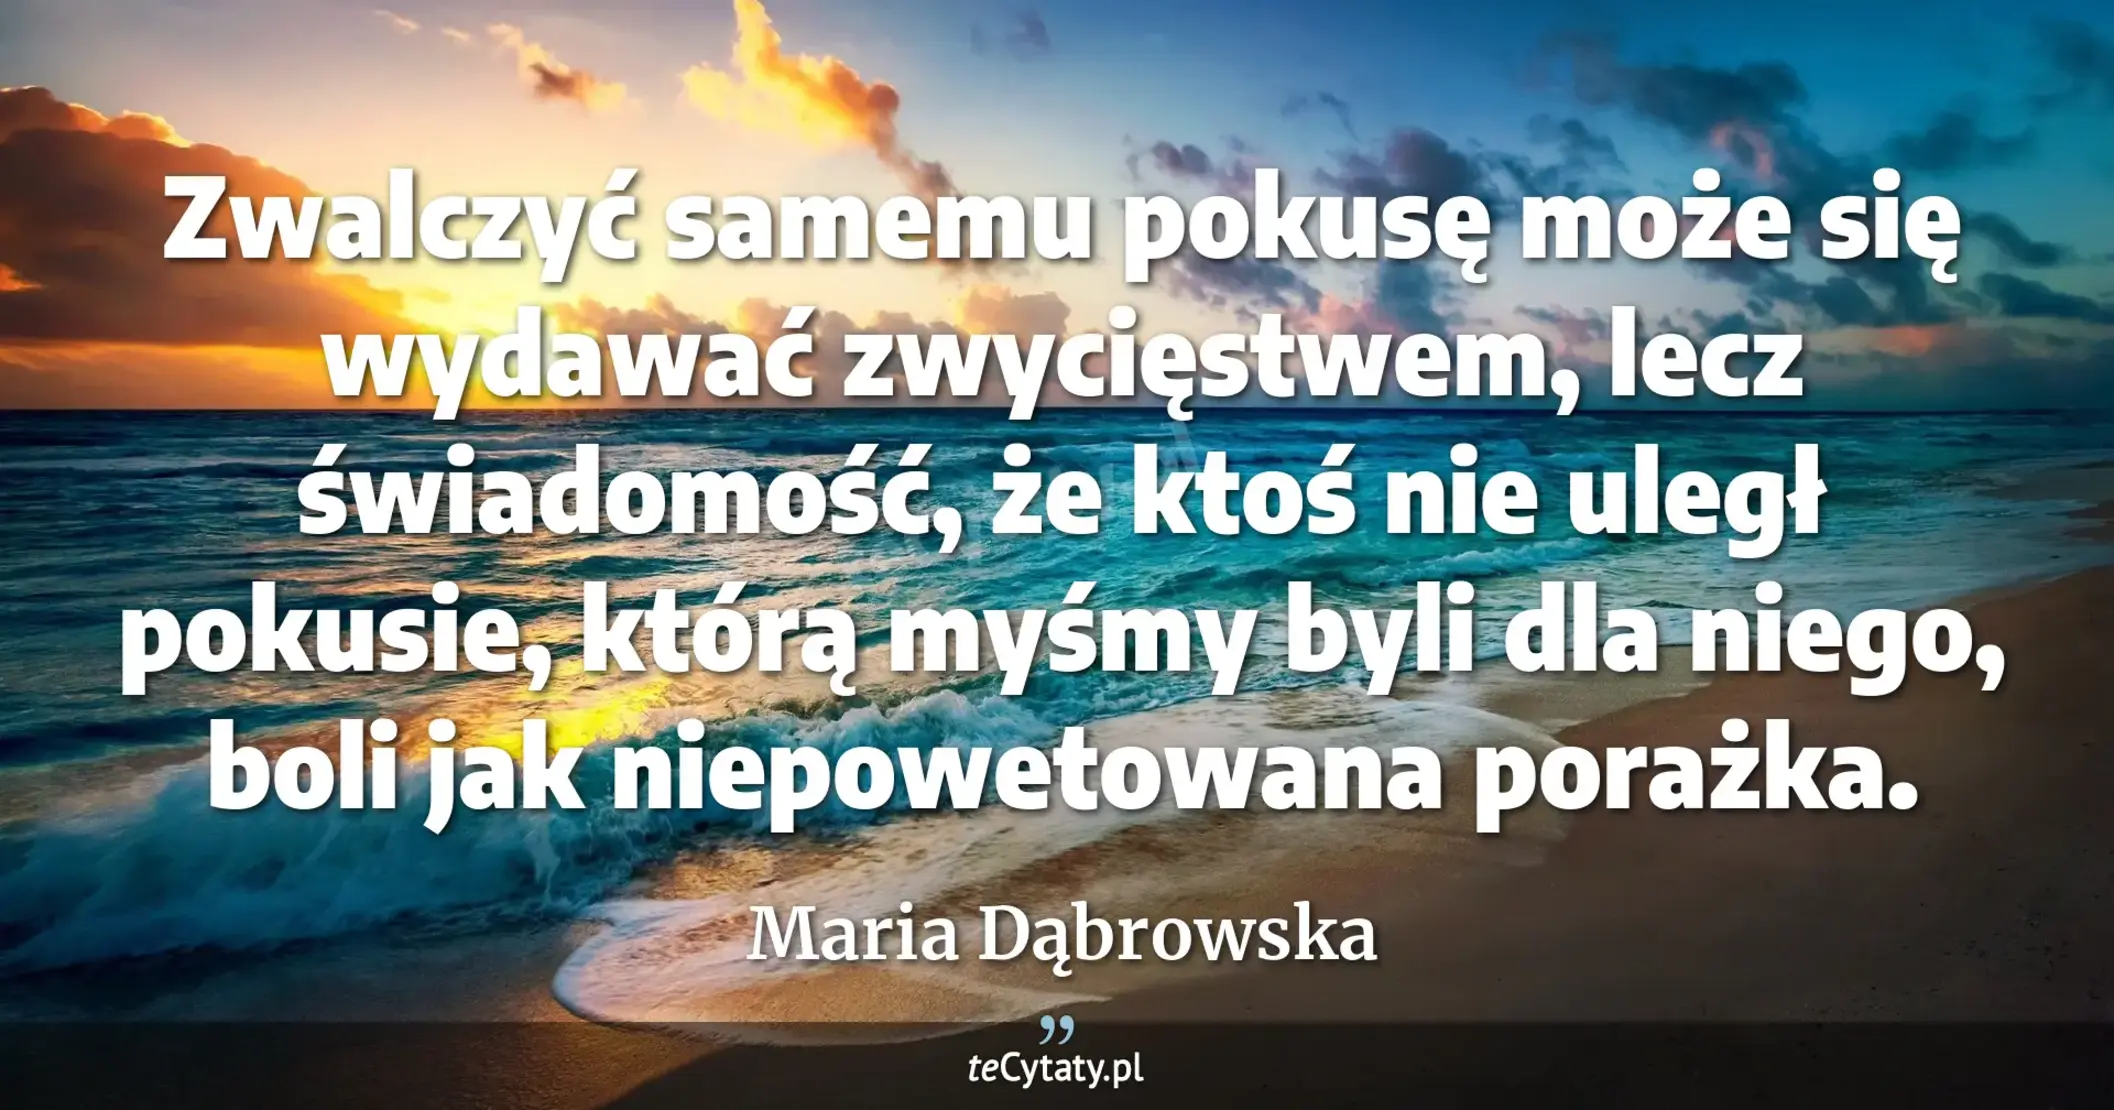 Zwalczyć samemu pokusę może się wydawać zwycięstwem, lecz świadomość, że ktoś nie uległ pokusie, którą myśmy byli dla niego, boli jak niepowetowana porażka. - Maria Dąbrowska